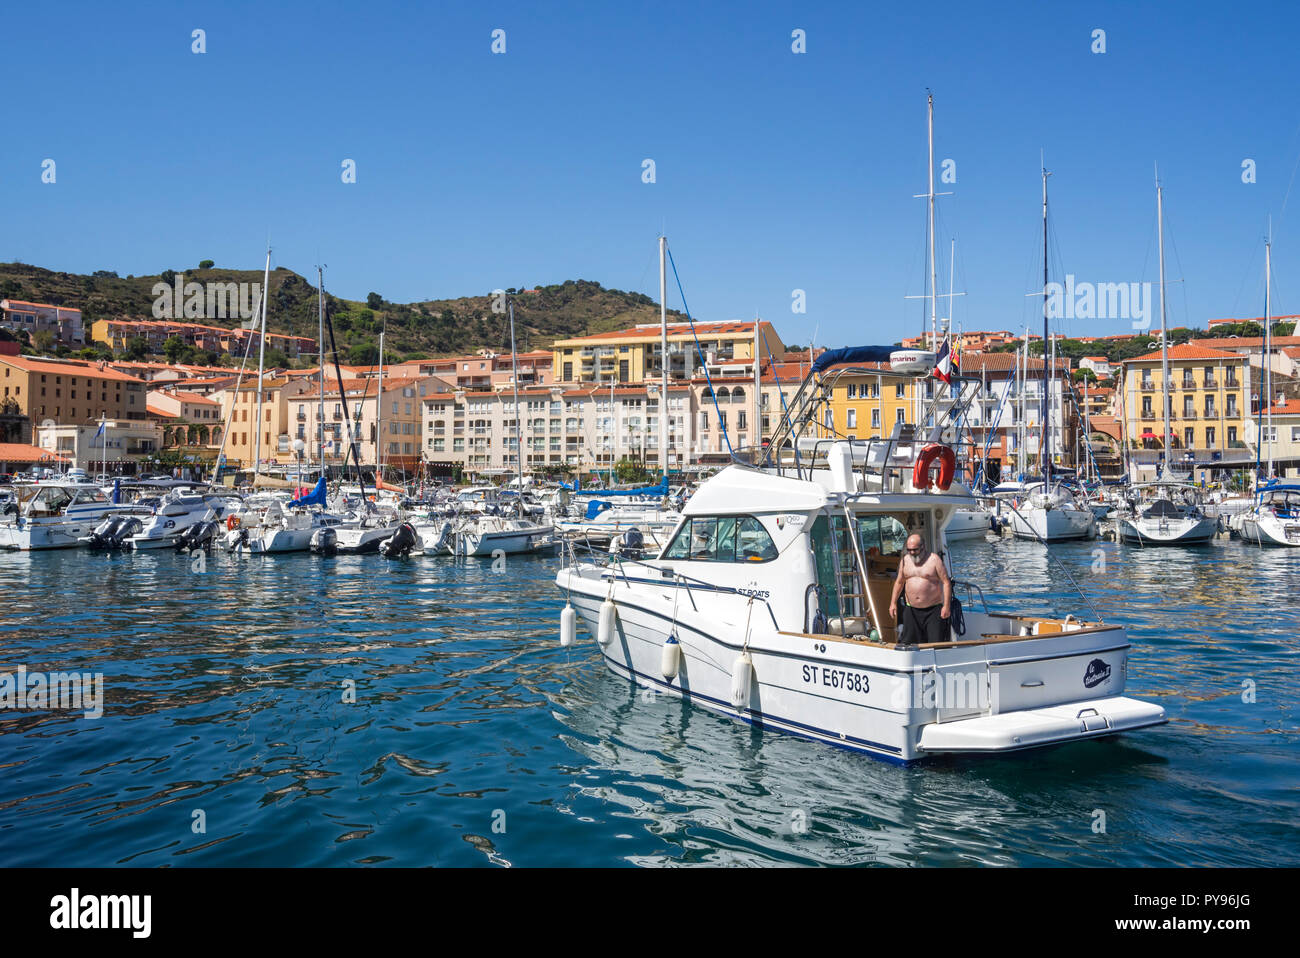 Barco de motor entrando marina cuenca / yate en Port-Vendres, puerto pesquero del Mediterráneo a lo largo de la Côte Vermeille, Pirineos Orientales, Francia Foto de stock